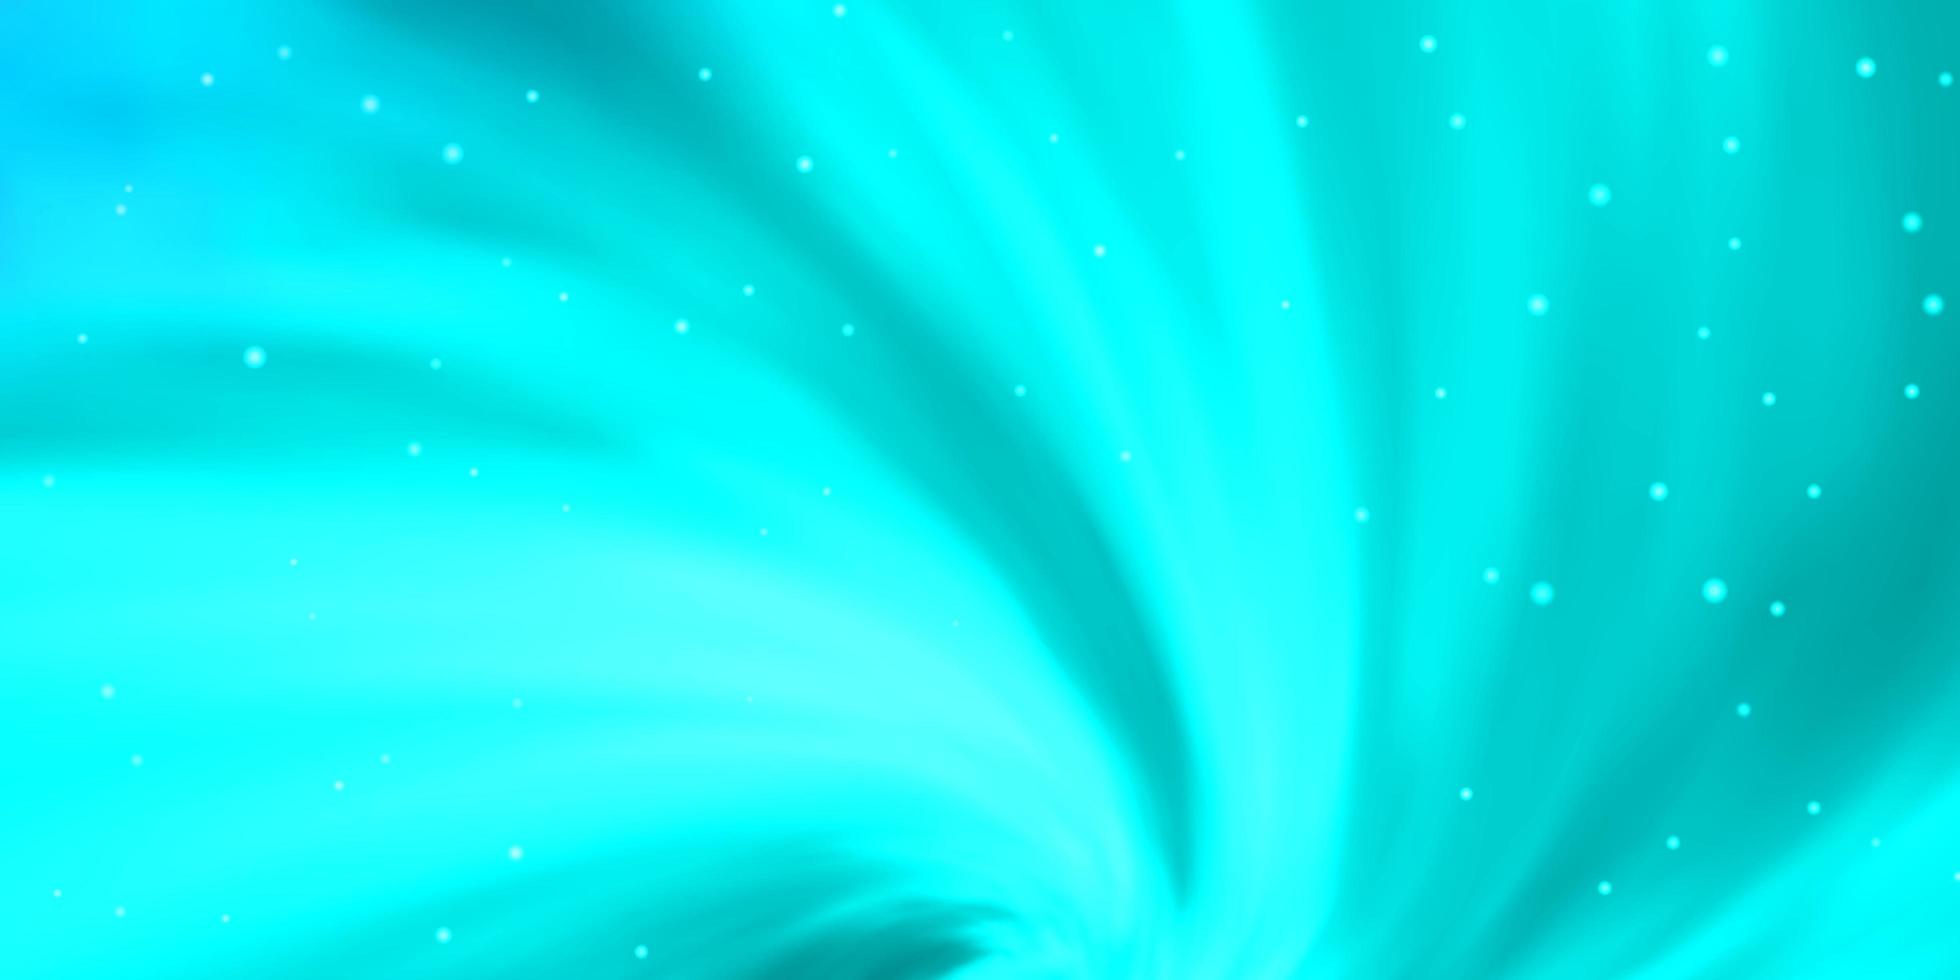 sfondo vettoriale azzurro con stelle piccole e grandi illustrazione decorativa con stelle su tema modello astratto per telefoni cellulari